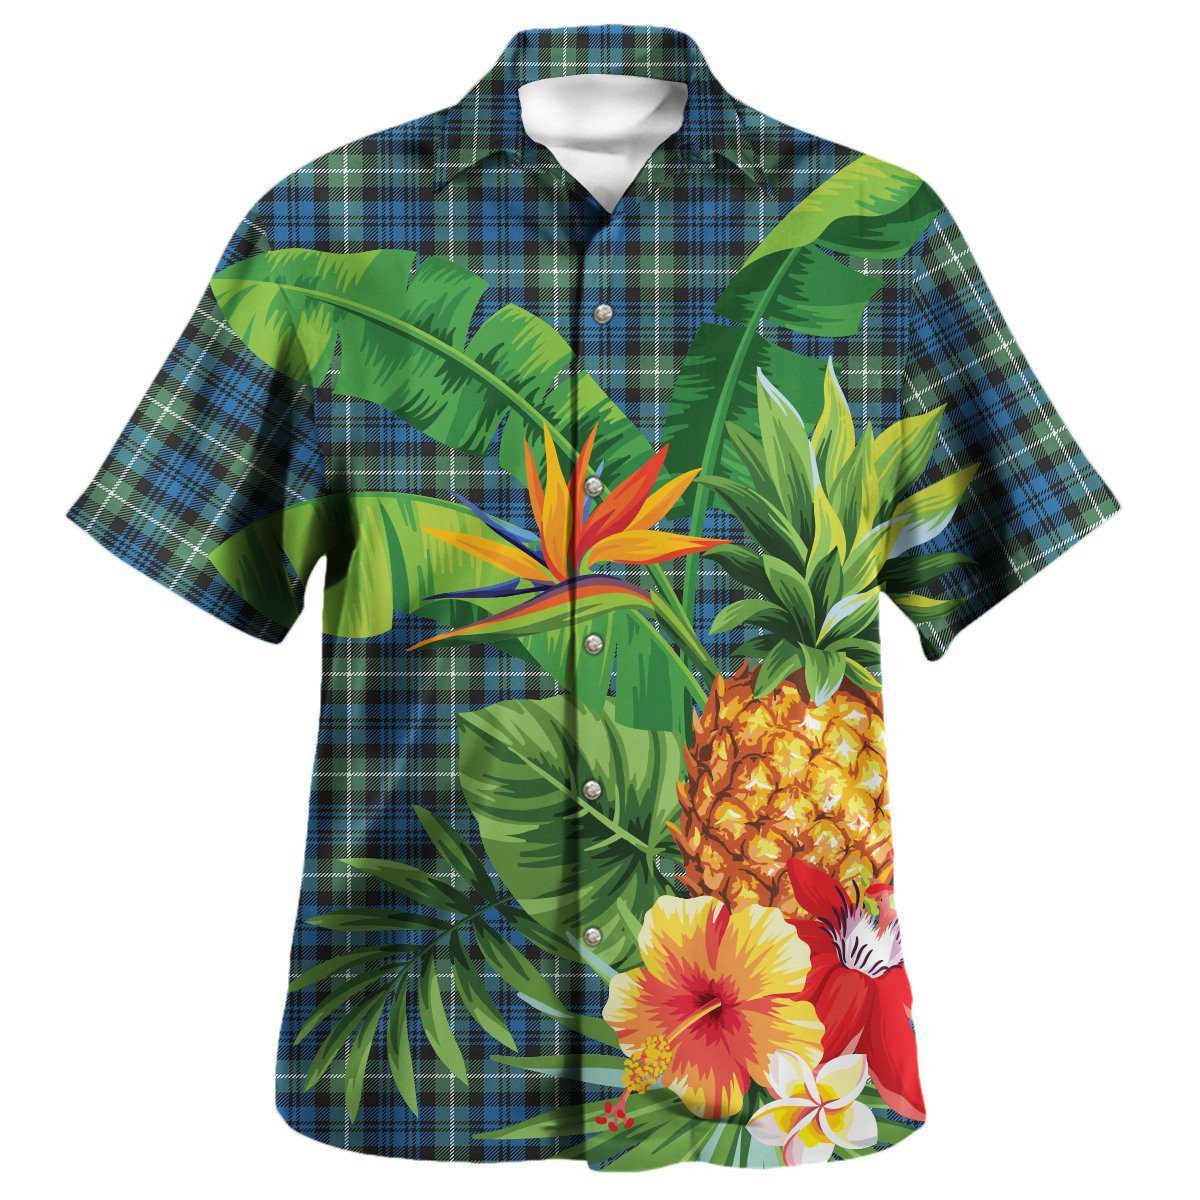 Lamont Ancient Tartan Aloha Shirt version 2